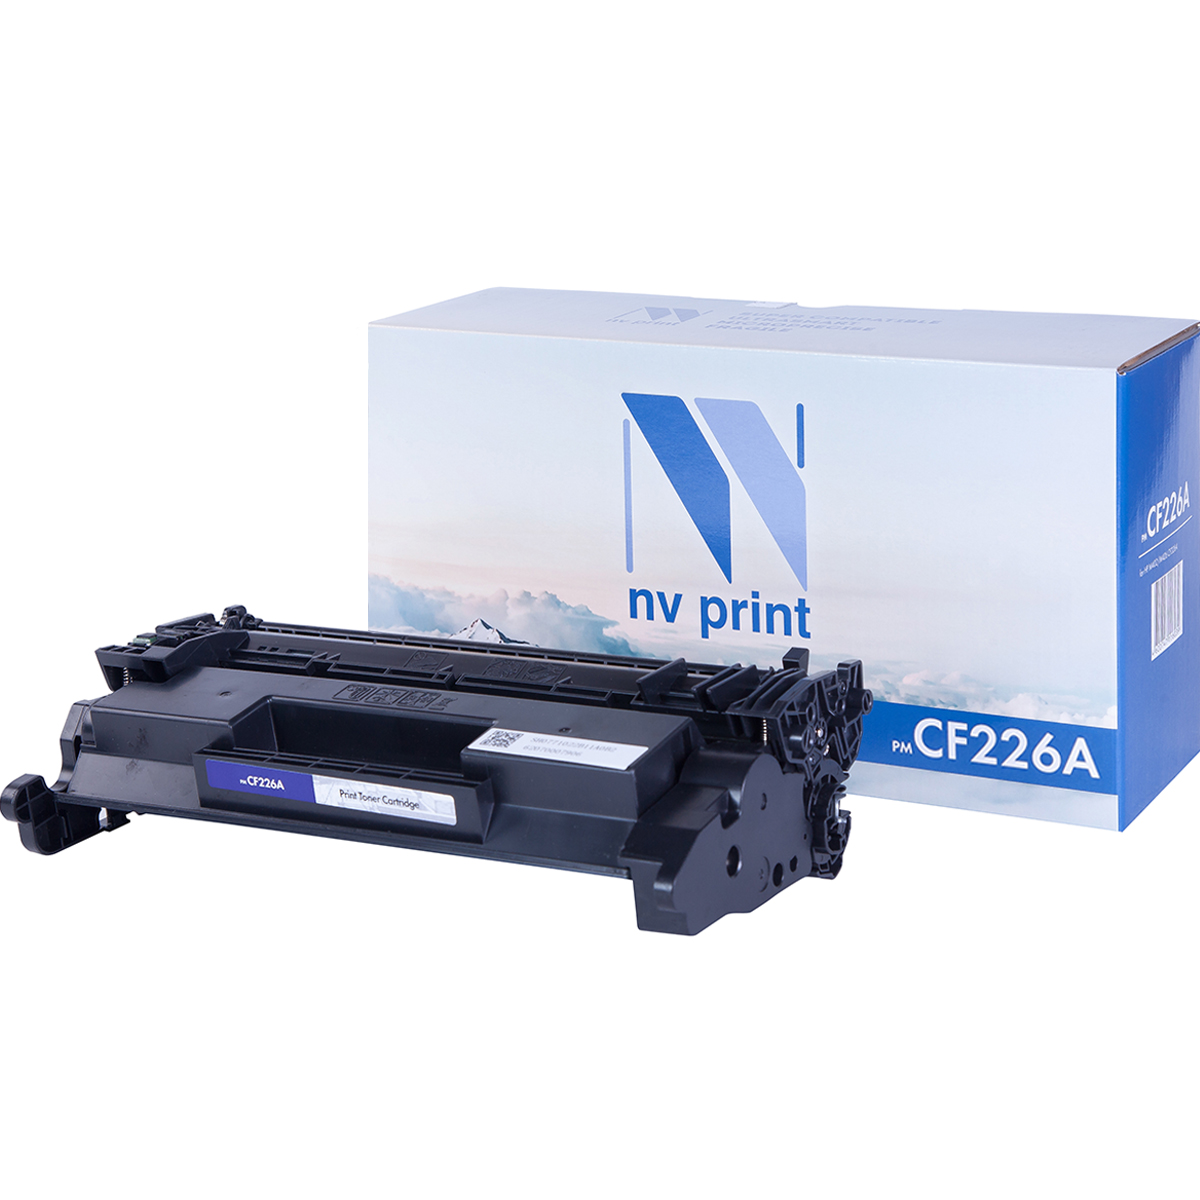 Картридж NV Print CF226A для Нewlett-Packard M402/M426 (3100k) картридж hp 26a cf226a для lj pro m402 m426 3100k черный